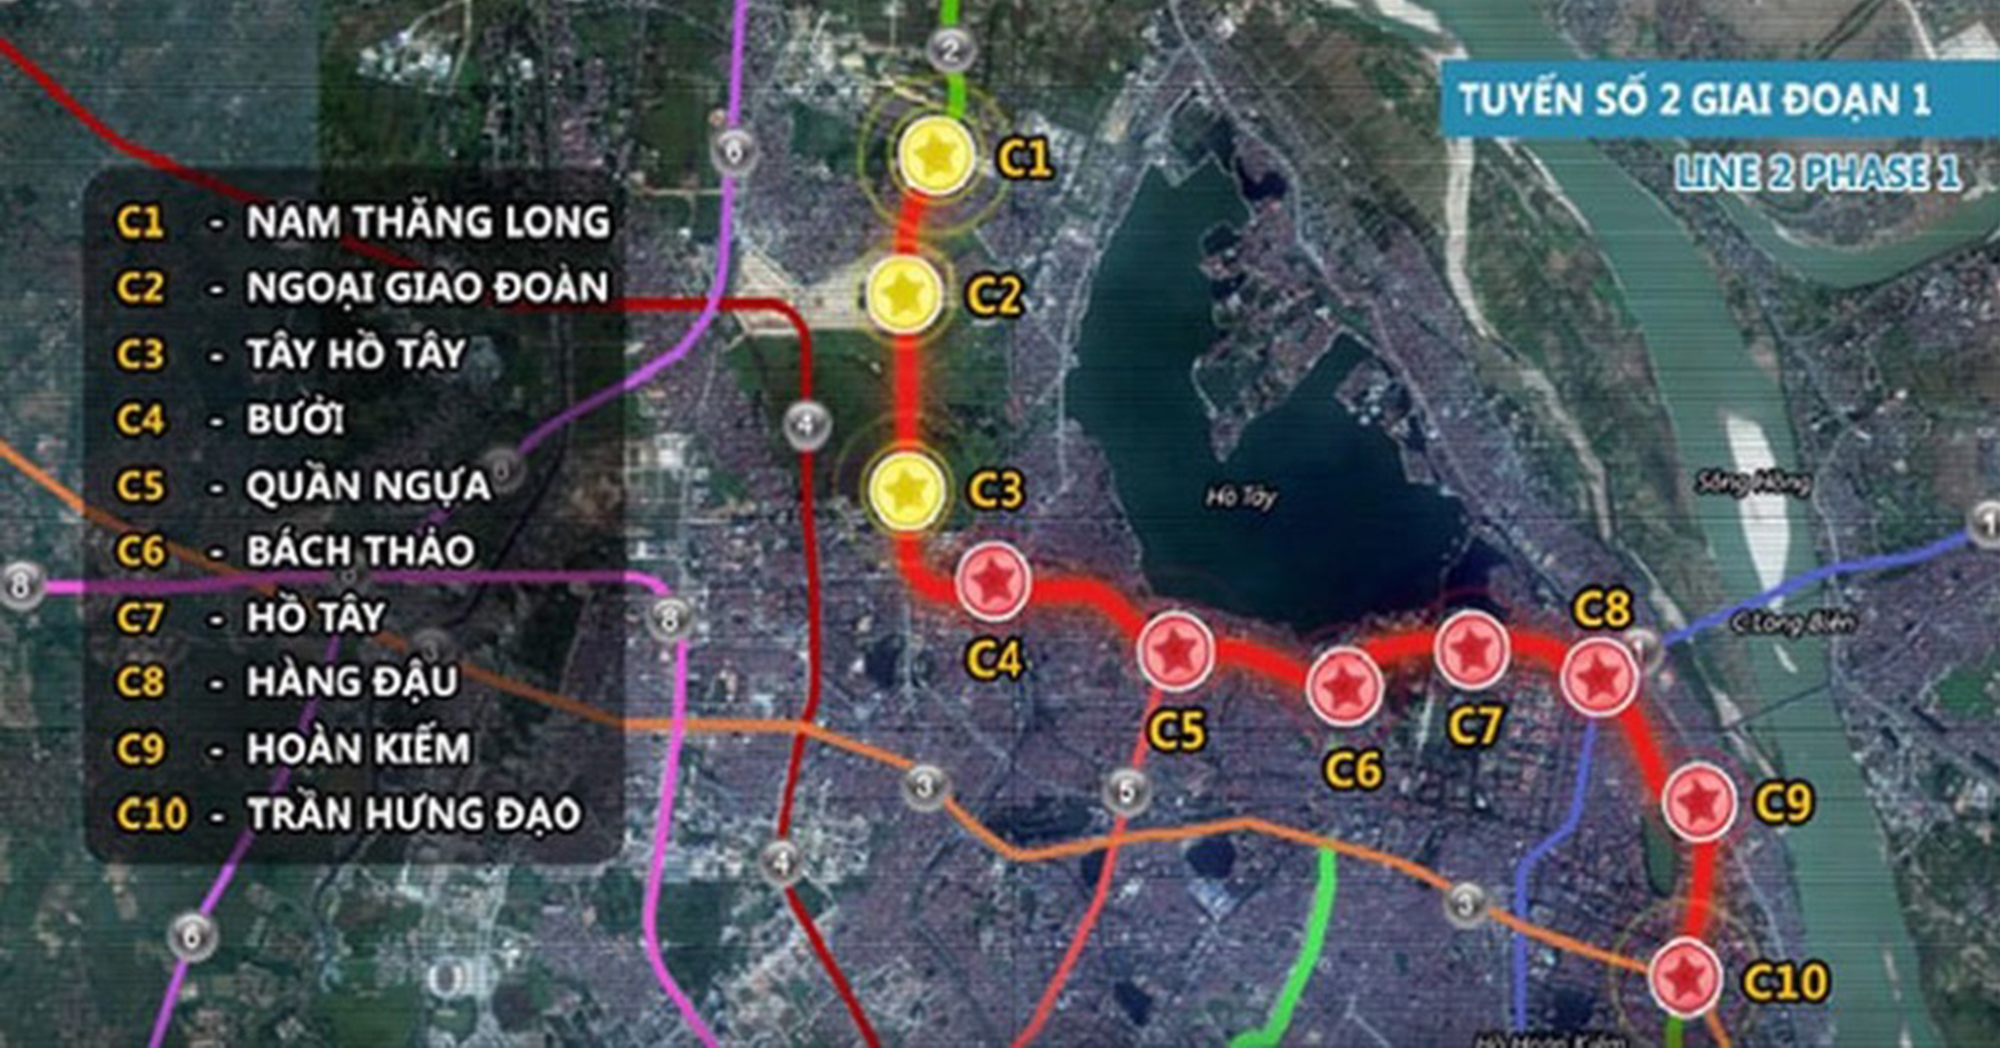 Toàn cảnh 3 tuyến đường sắt đô thị đang được triển khai ở Hà Nội: Có tuyến sẽ đưa vào hoạt động trong tháng này- Ảnh 12.